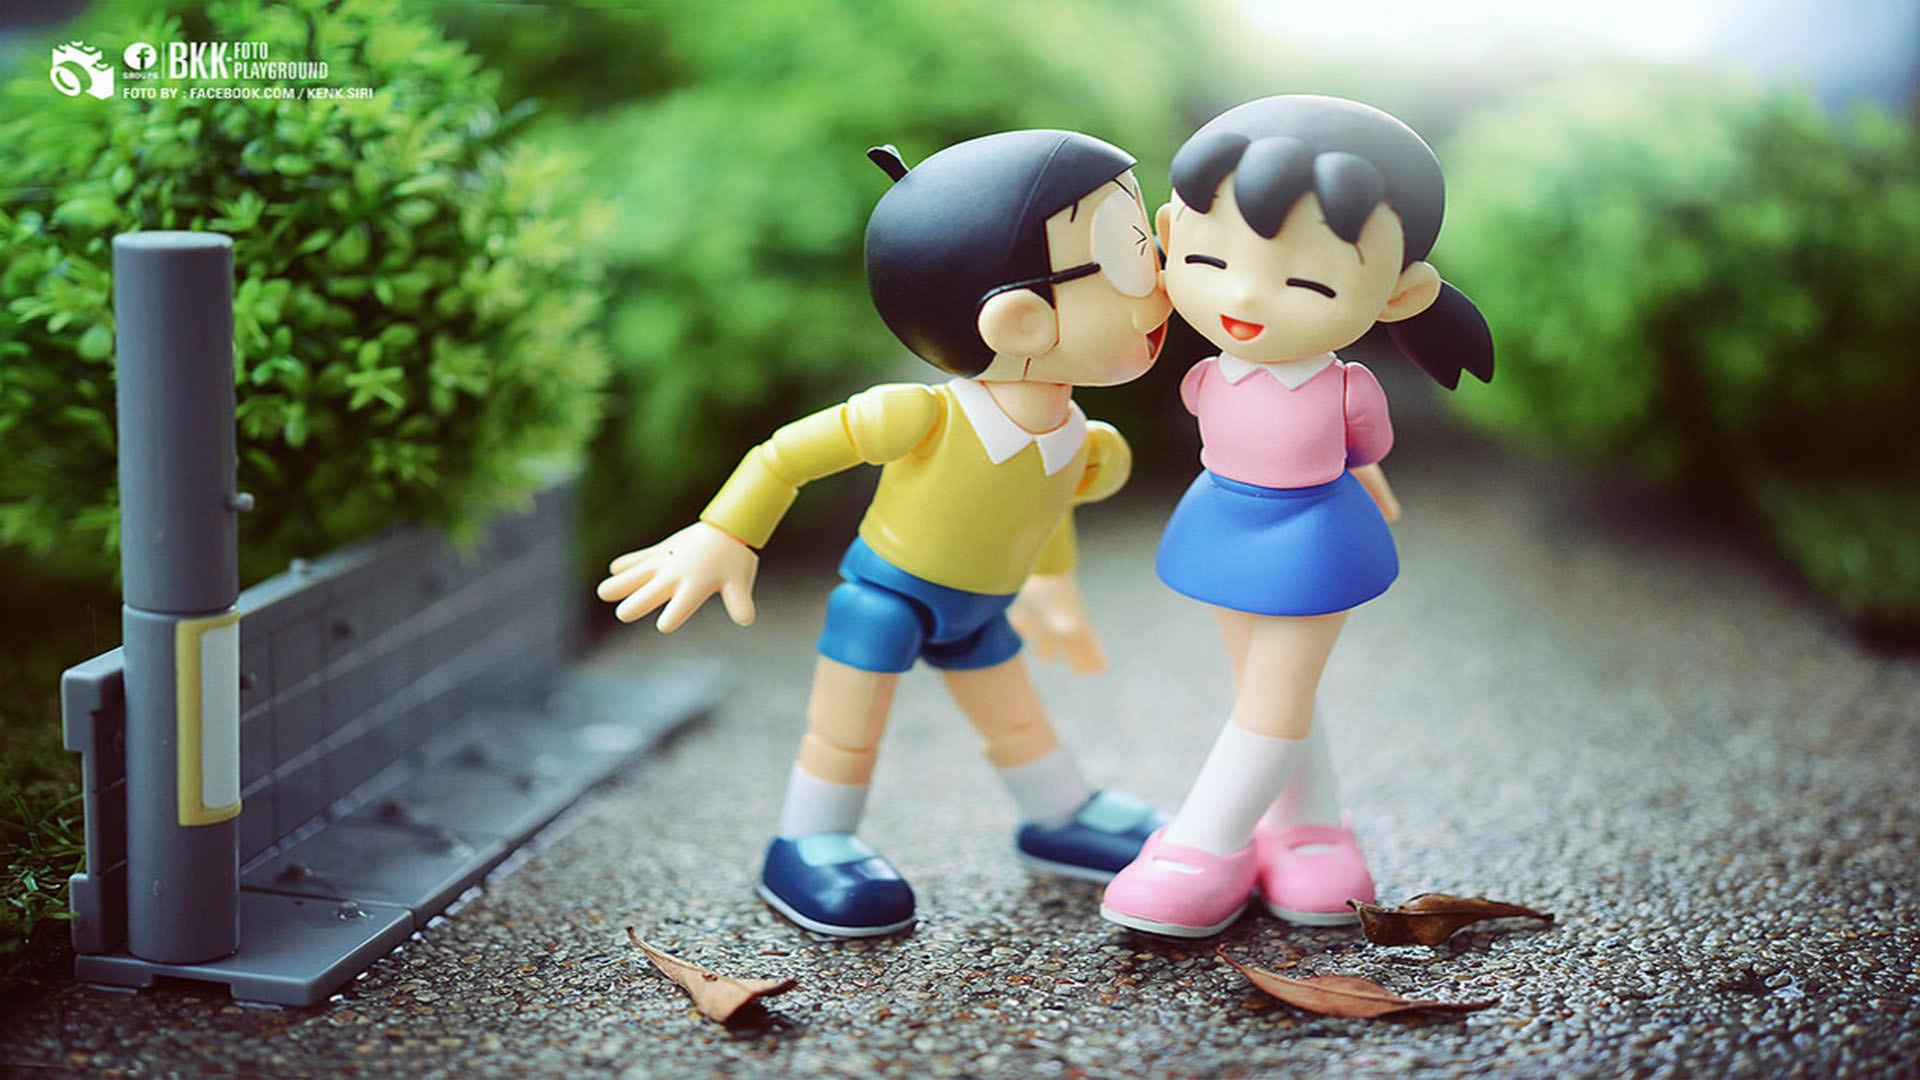 Nobita And Shizuka Love Wallpapers - Wallpaper Cave